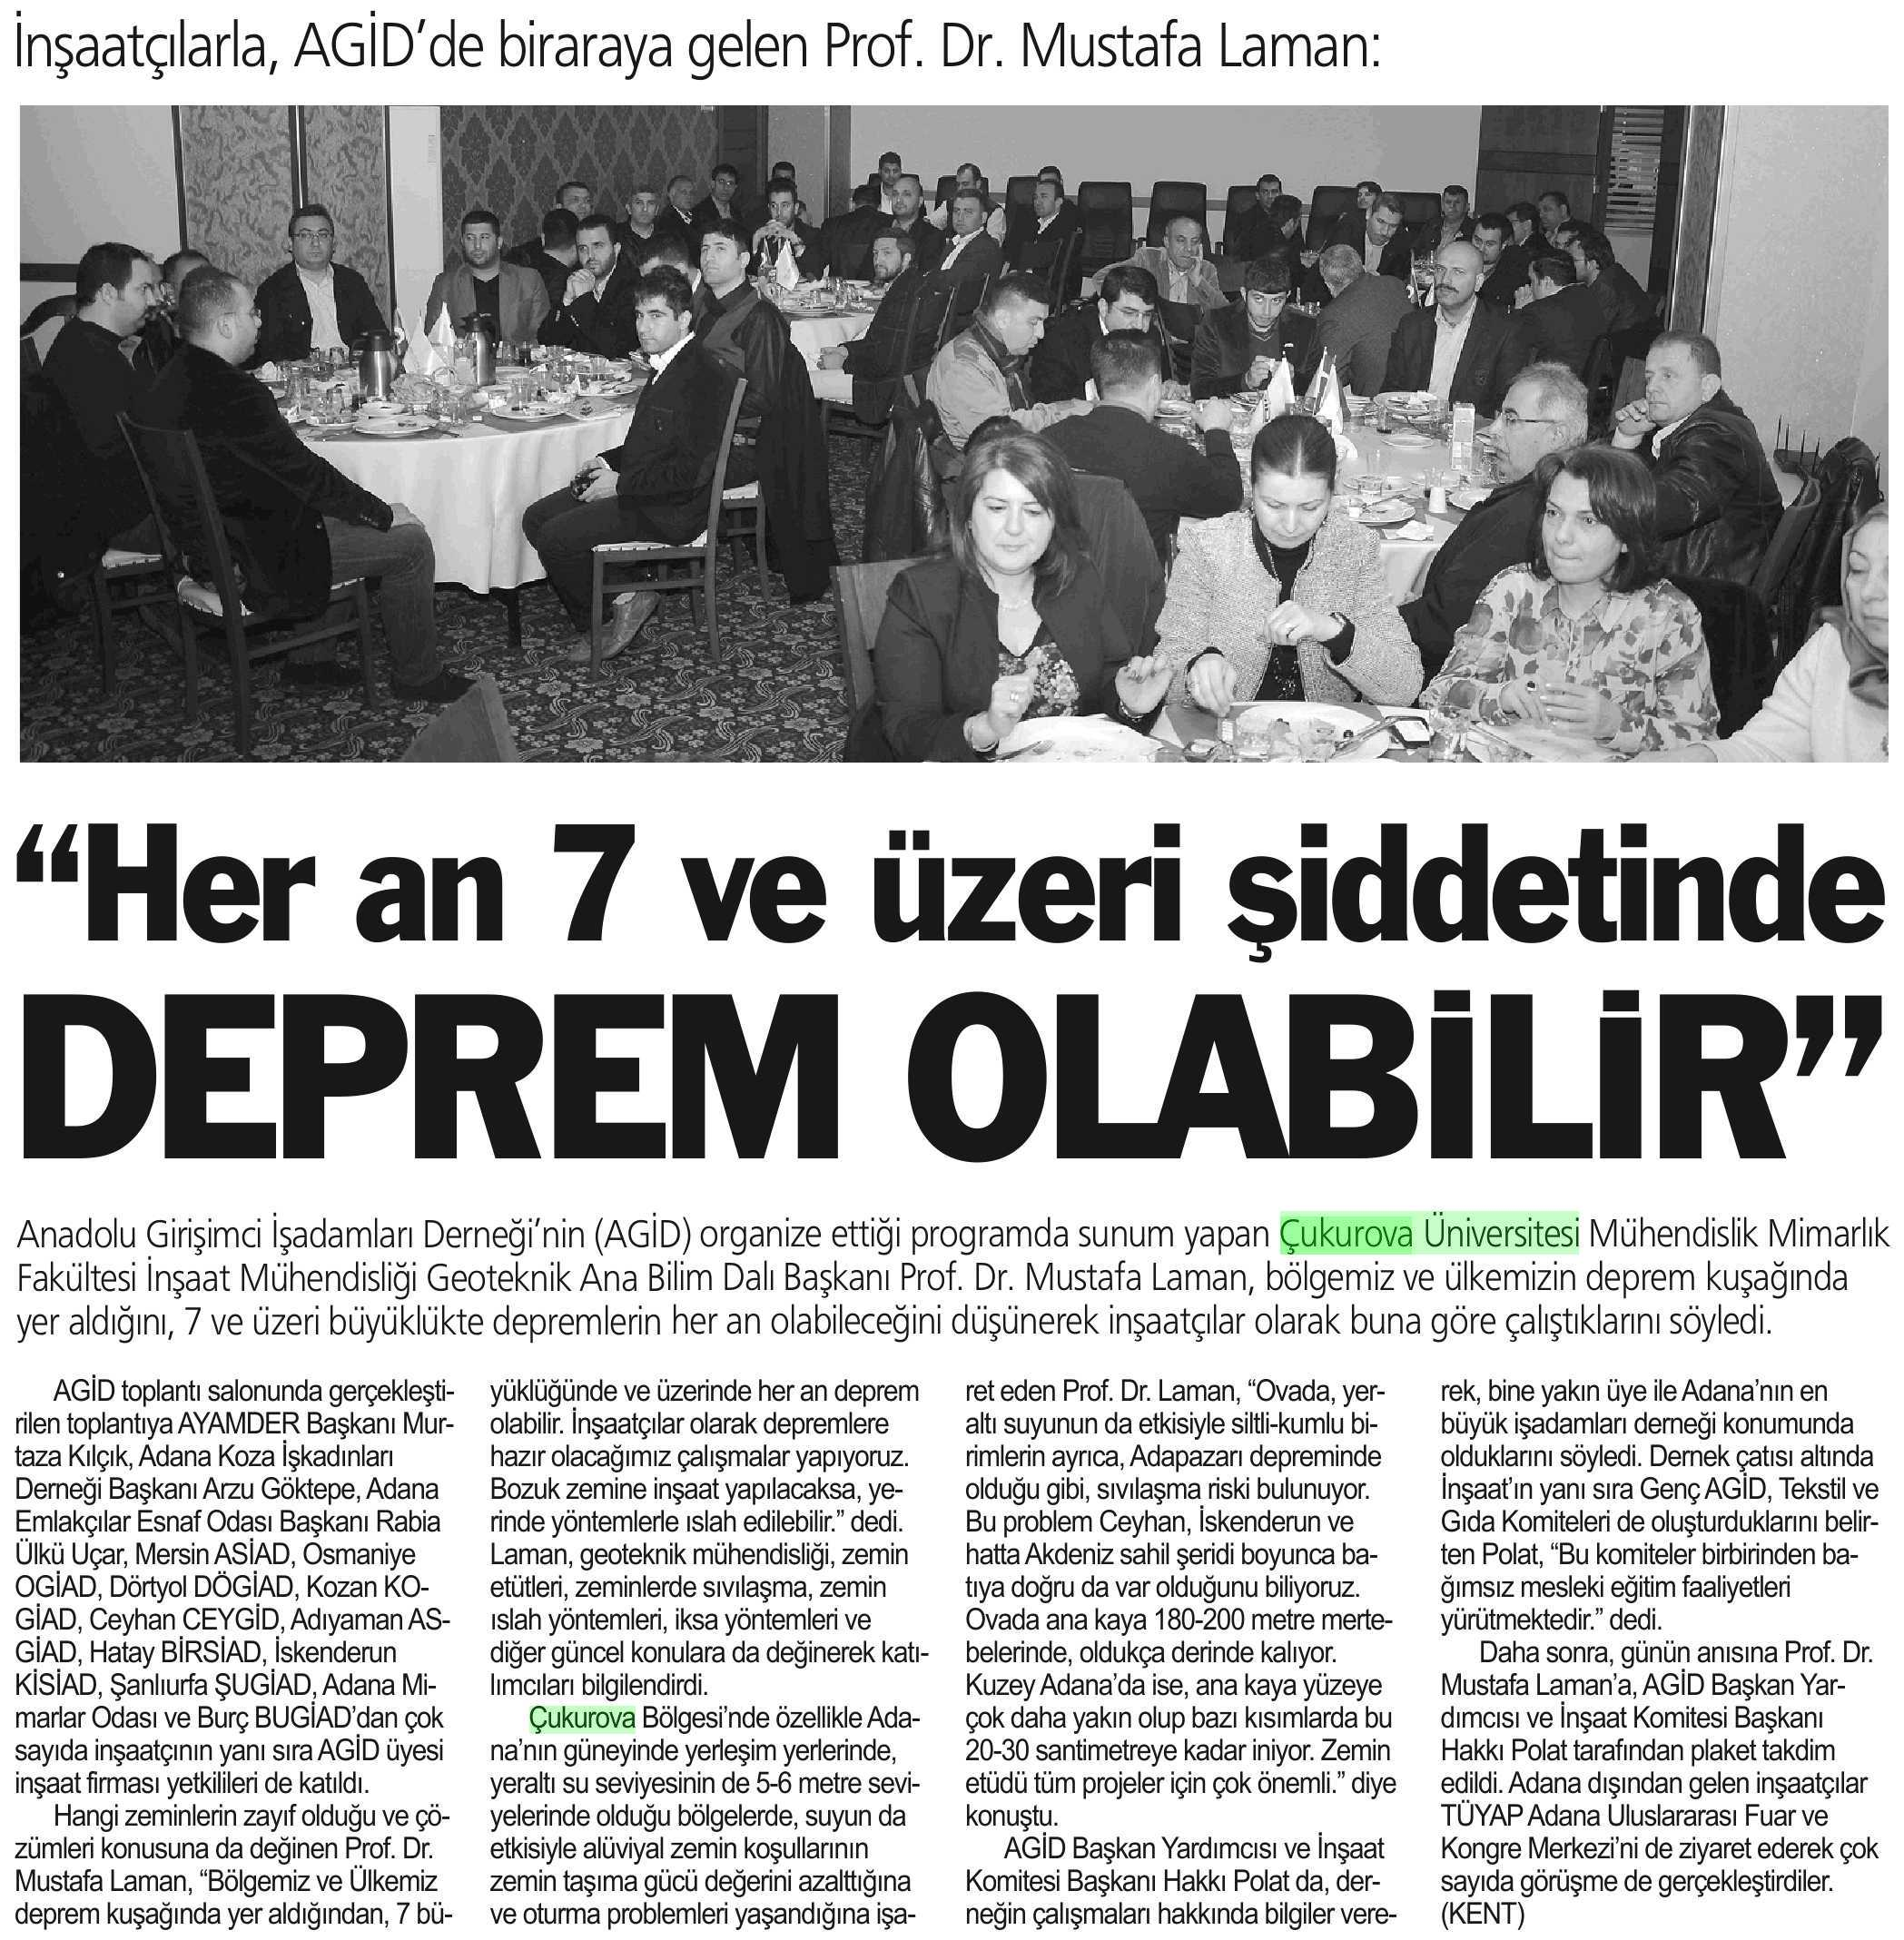 'HER AN 7 VE ÜZERI SIDDETINDE DEPREM OLABILIR Yayın Adı : Adana